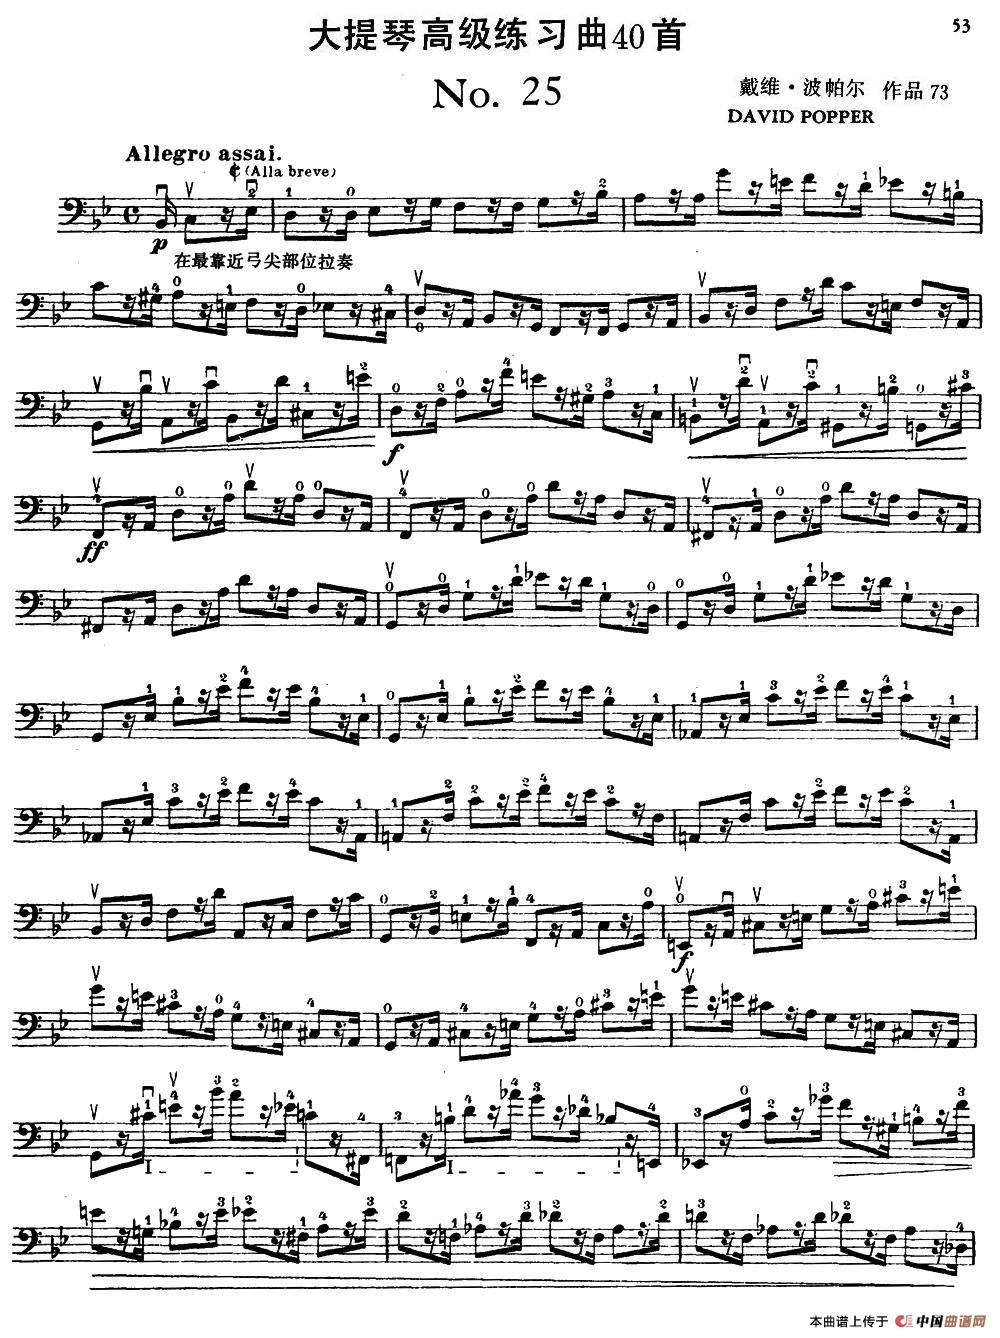 大提琴高级练习曲40首 No.25